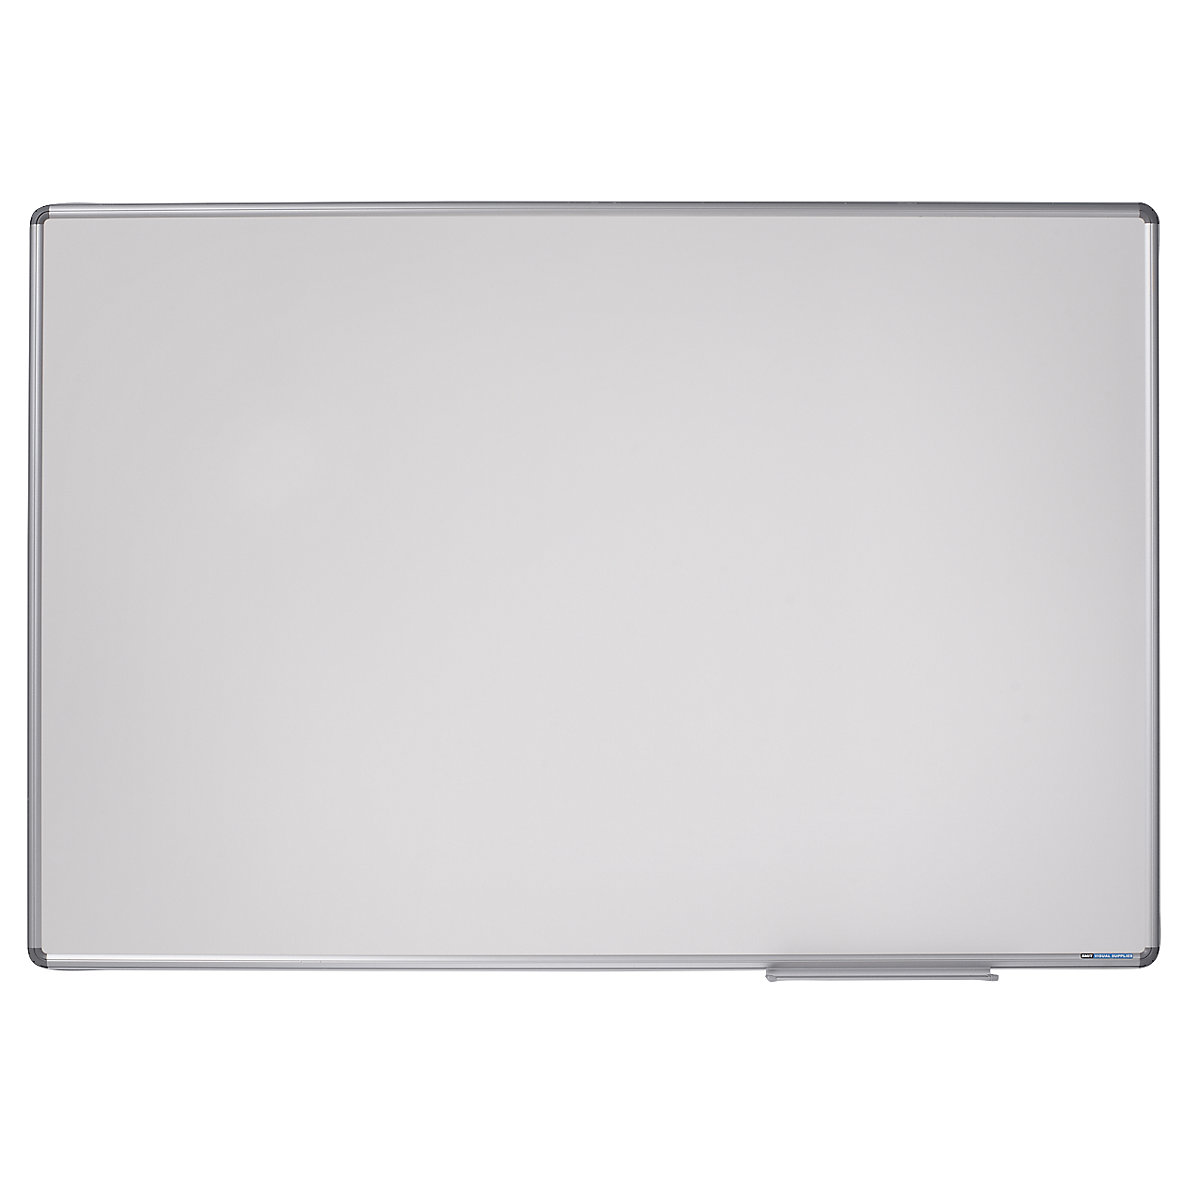 Designerska tablica ścienna – eurokraft pro, blacha stalowa, emaliowana, szer. x wys. 1500 x 1000 mm-12